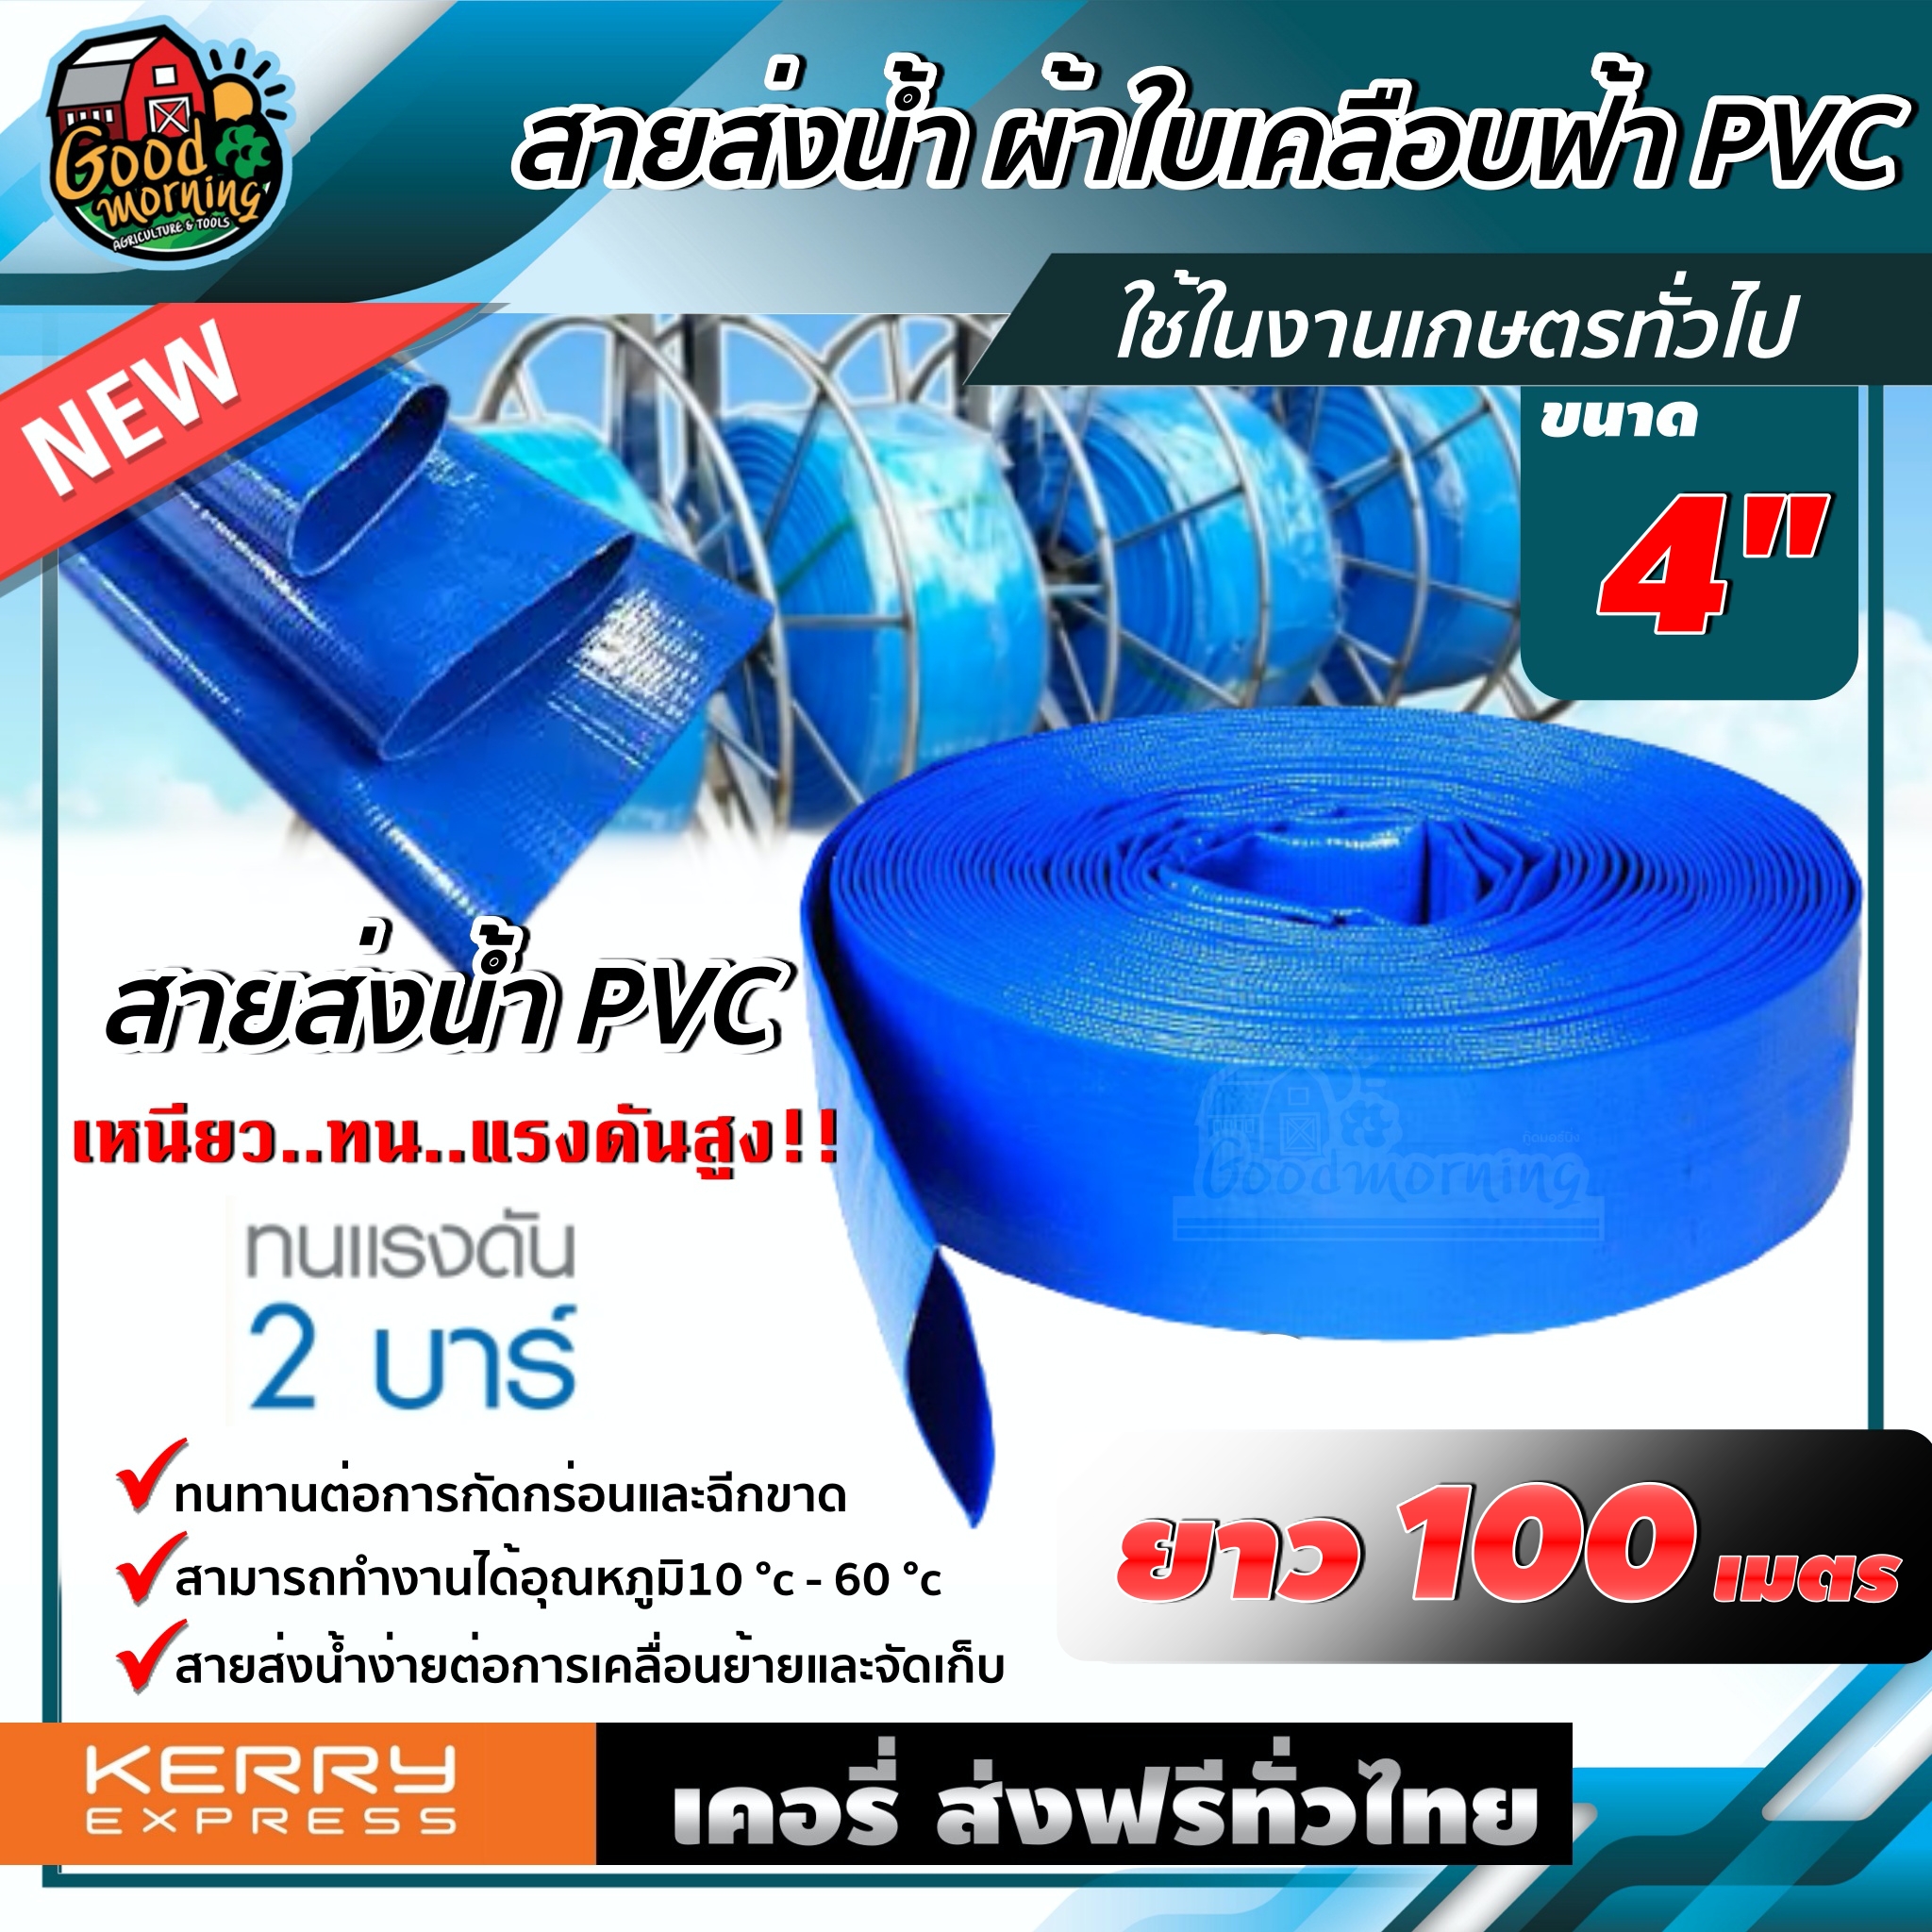 สายส่งน้ำ ผ้าใบเคลือบฟ้า PVC 4นิ้ว ยาว 100 เมตร 1ม้วน สายส่งน้ำสีฟ้า สายดับเพลิง ใช้ในงานเกษตรทั่วไป อุปกรณ์เกษตร สวน สายส่งน้ำ ระบบน้ำ ส่งฟรีทั่วไทย เก็บเงินปลายทาง